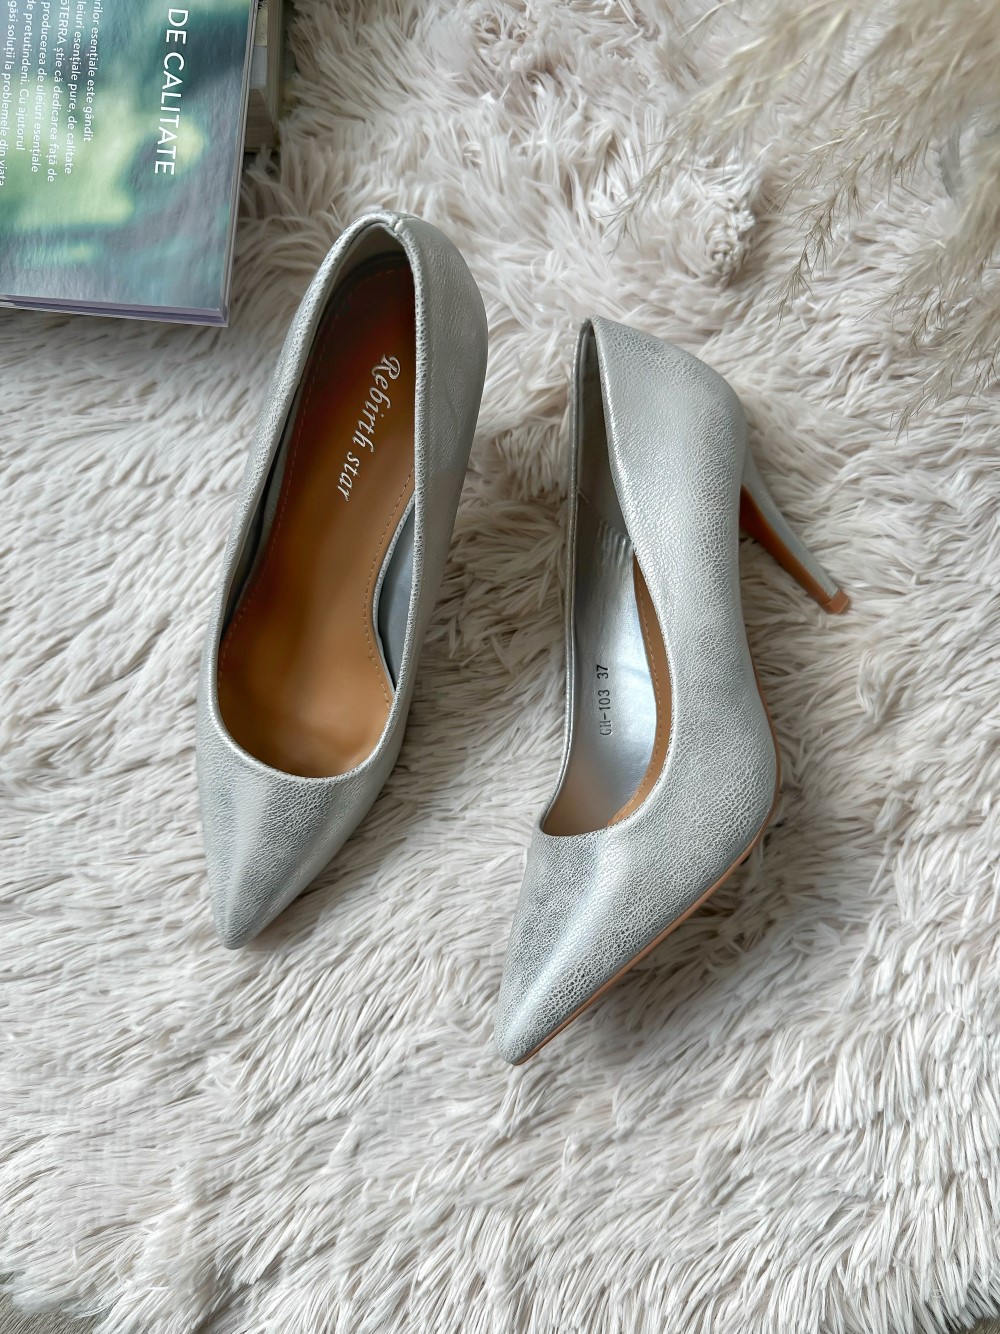 Pantofi eleganti dama cu toc subtire argintii 103